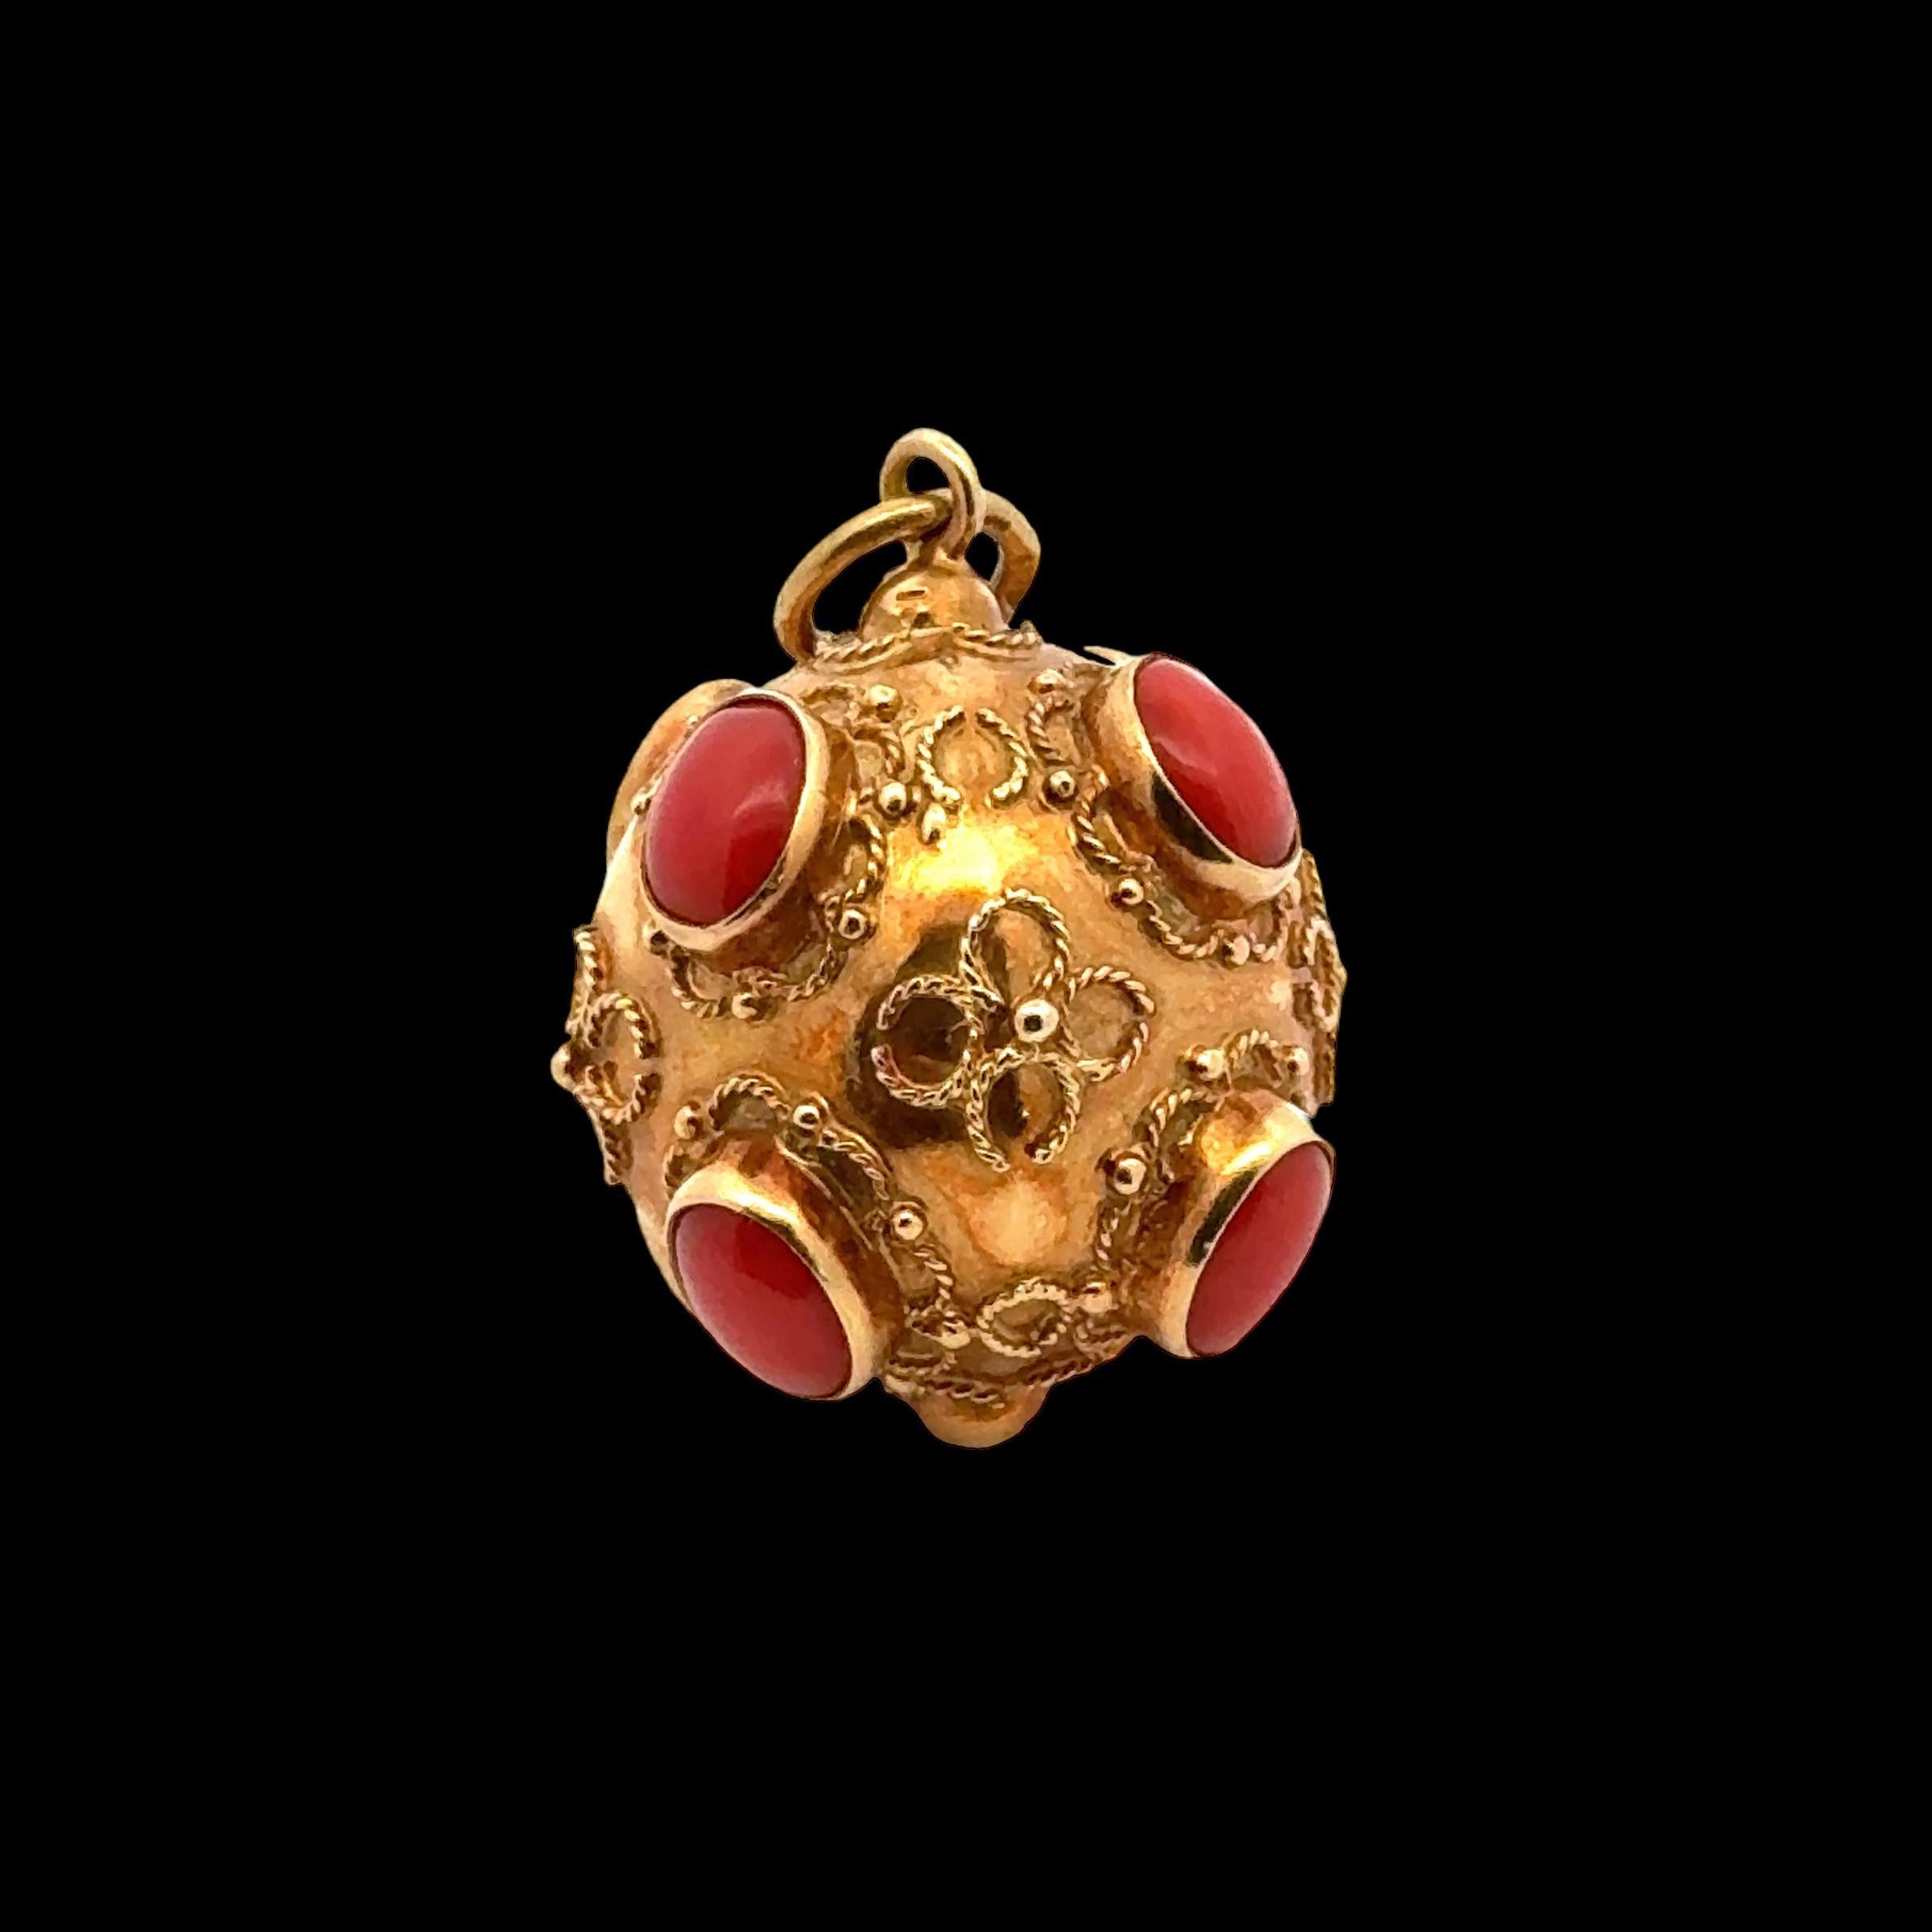 Schöner etruskischer Charme aus der Mitte des 20. Jahrhunderts, handgefertigt aus glänzendem 18 Karat Gelbgold. Der Charme des Anhängers ist mit Cabochon-Korallensteinen verziert, und das Gold ist mit Verzierungen und Goldbändern verziert. Der